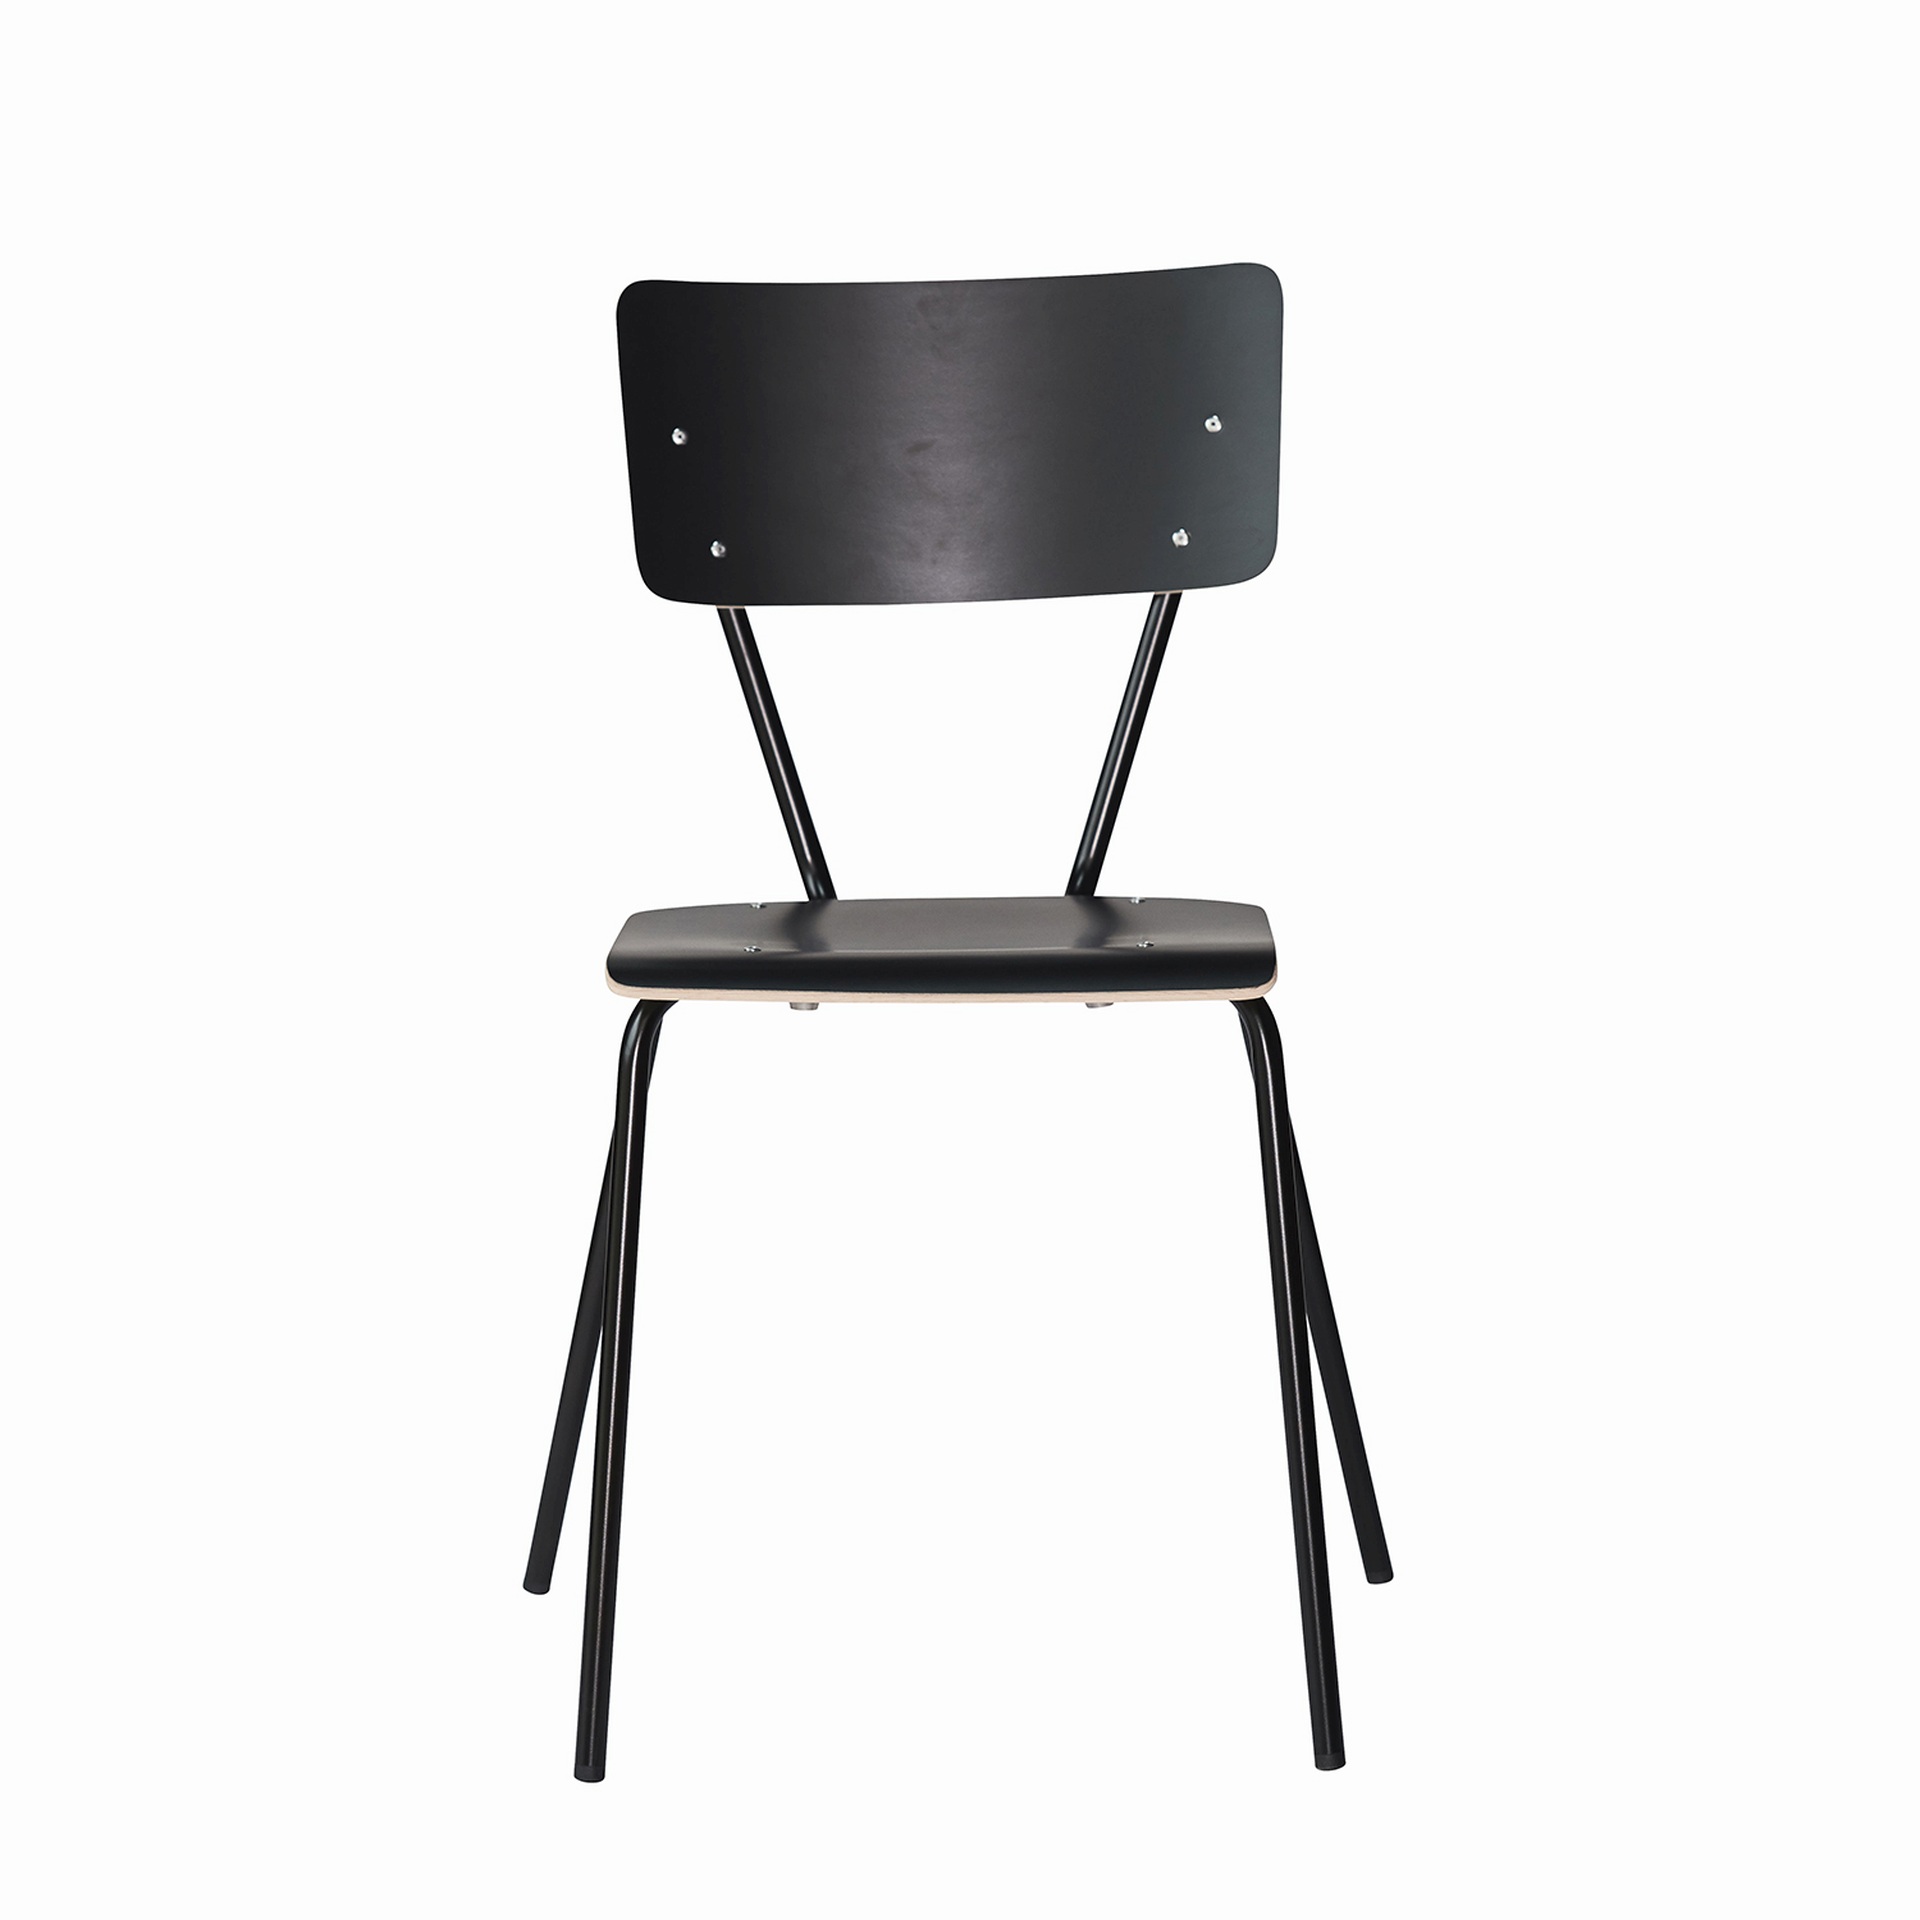 Der schlichte Stuhl Clio wurde aus Metall gefertigt und besitzt eine schwarze Farbe. Er ist eine Produkt der Marke Jan Kurtz.